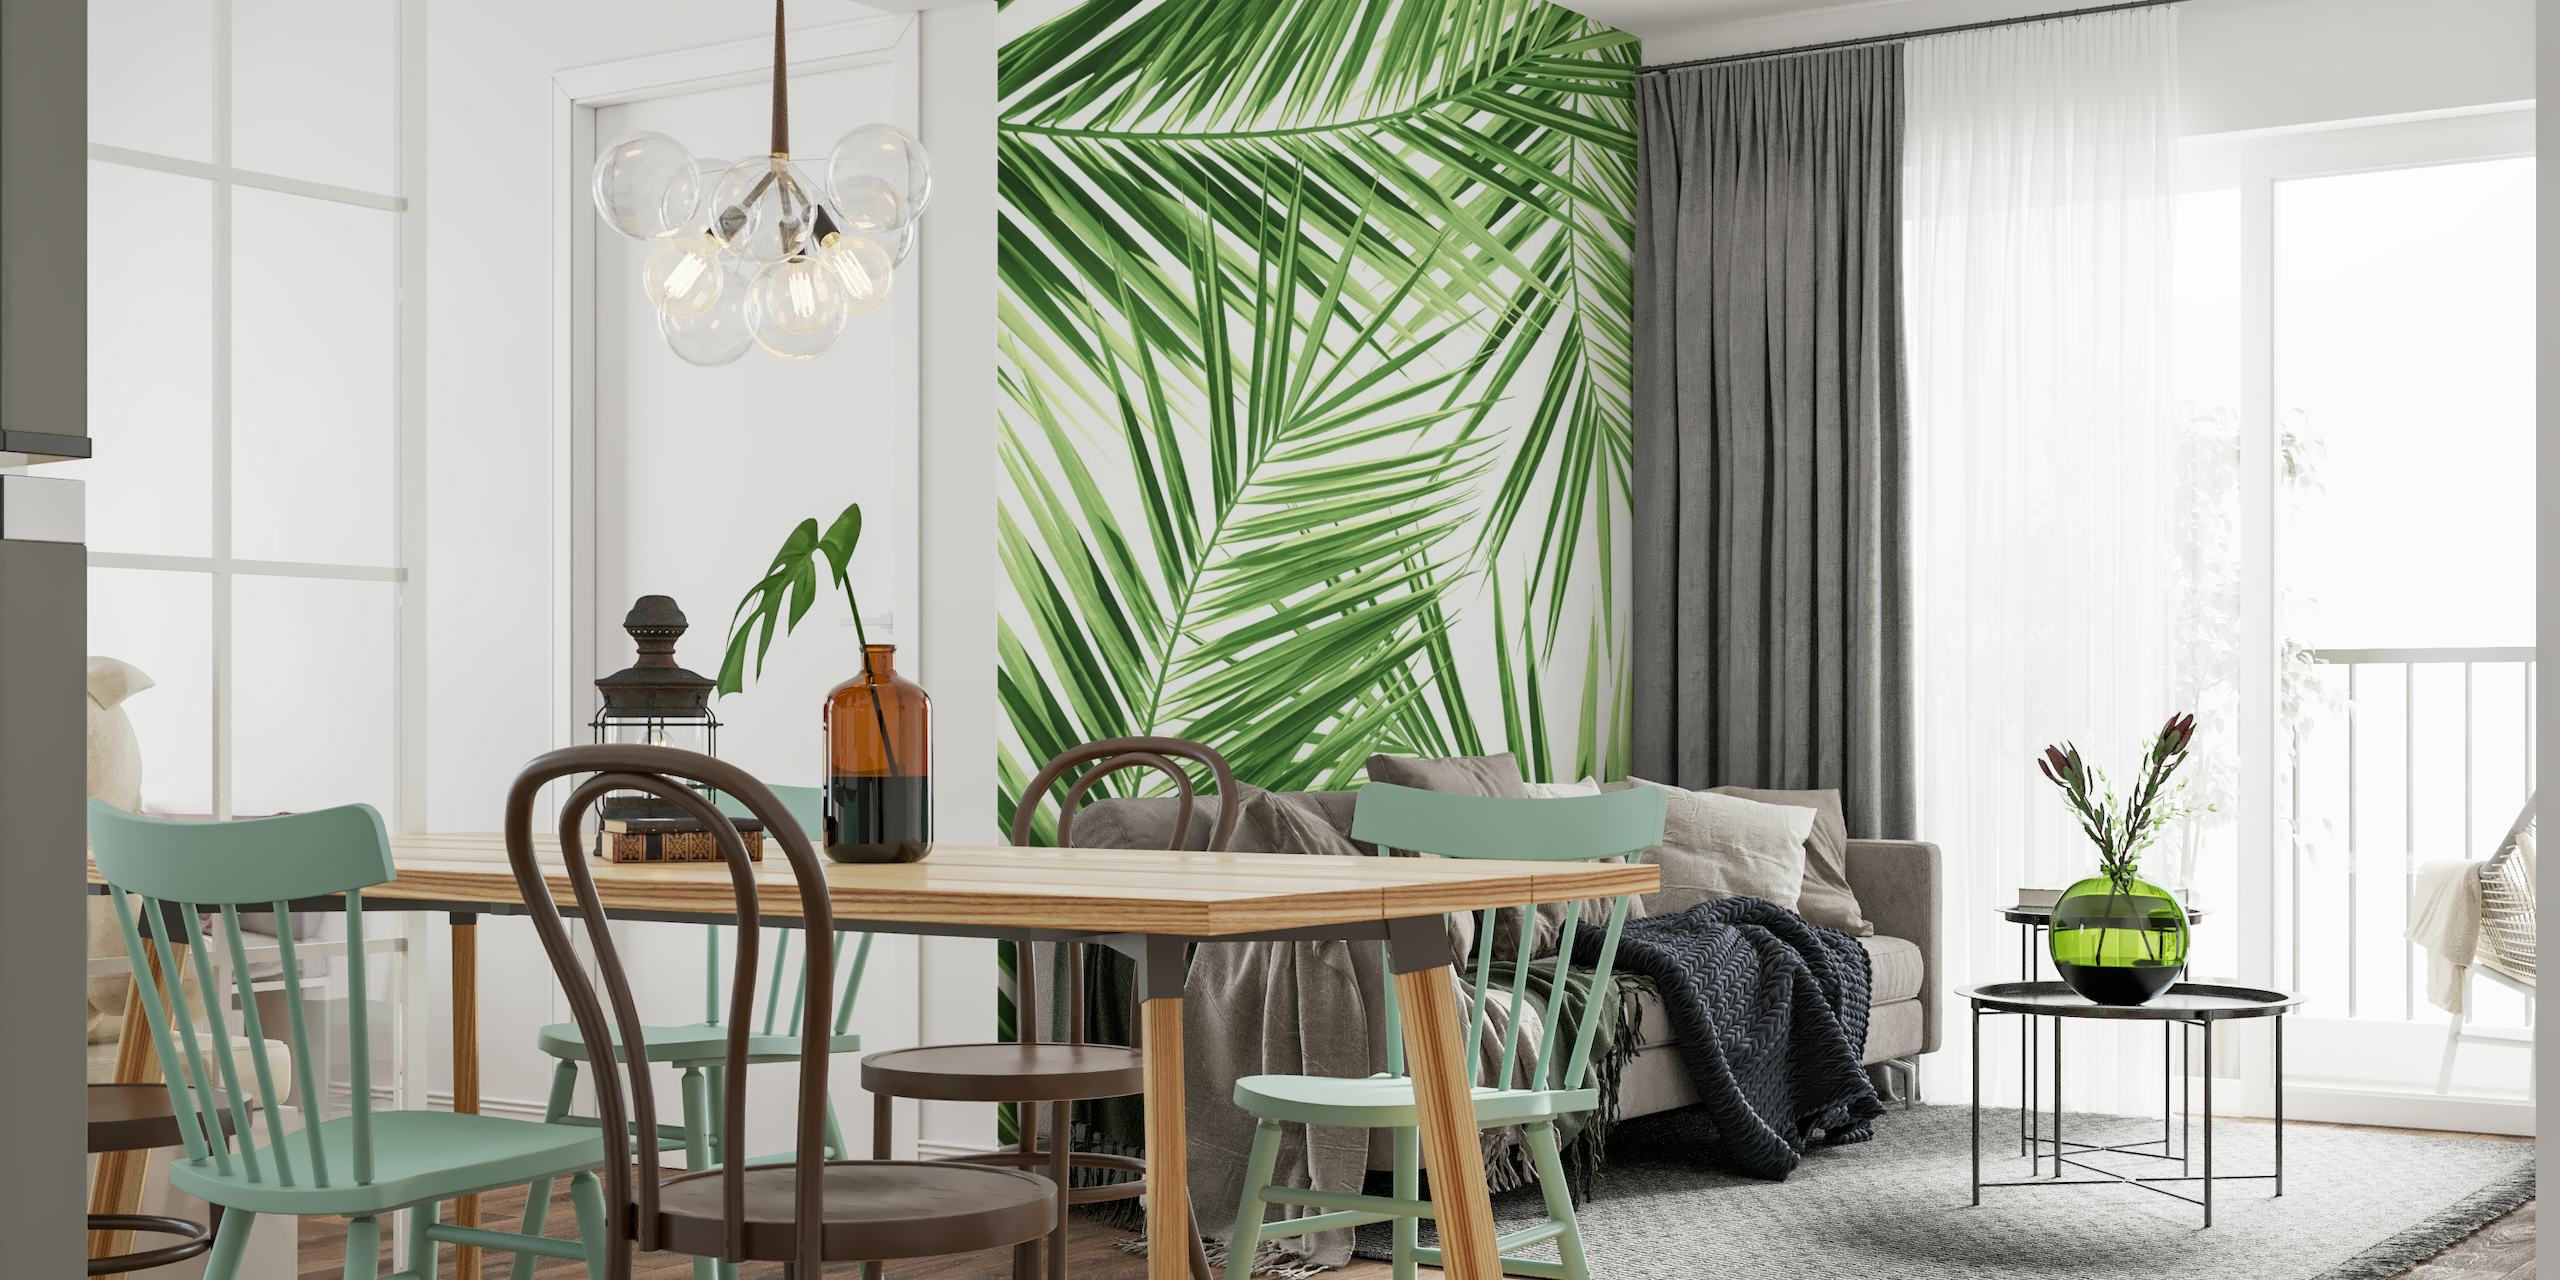 Fotomural vinílico de parede com padrão de folha de palmeira verde para uma decoração com tema tropical